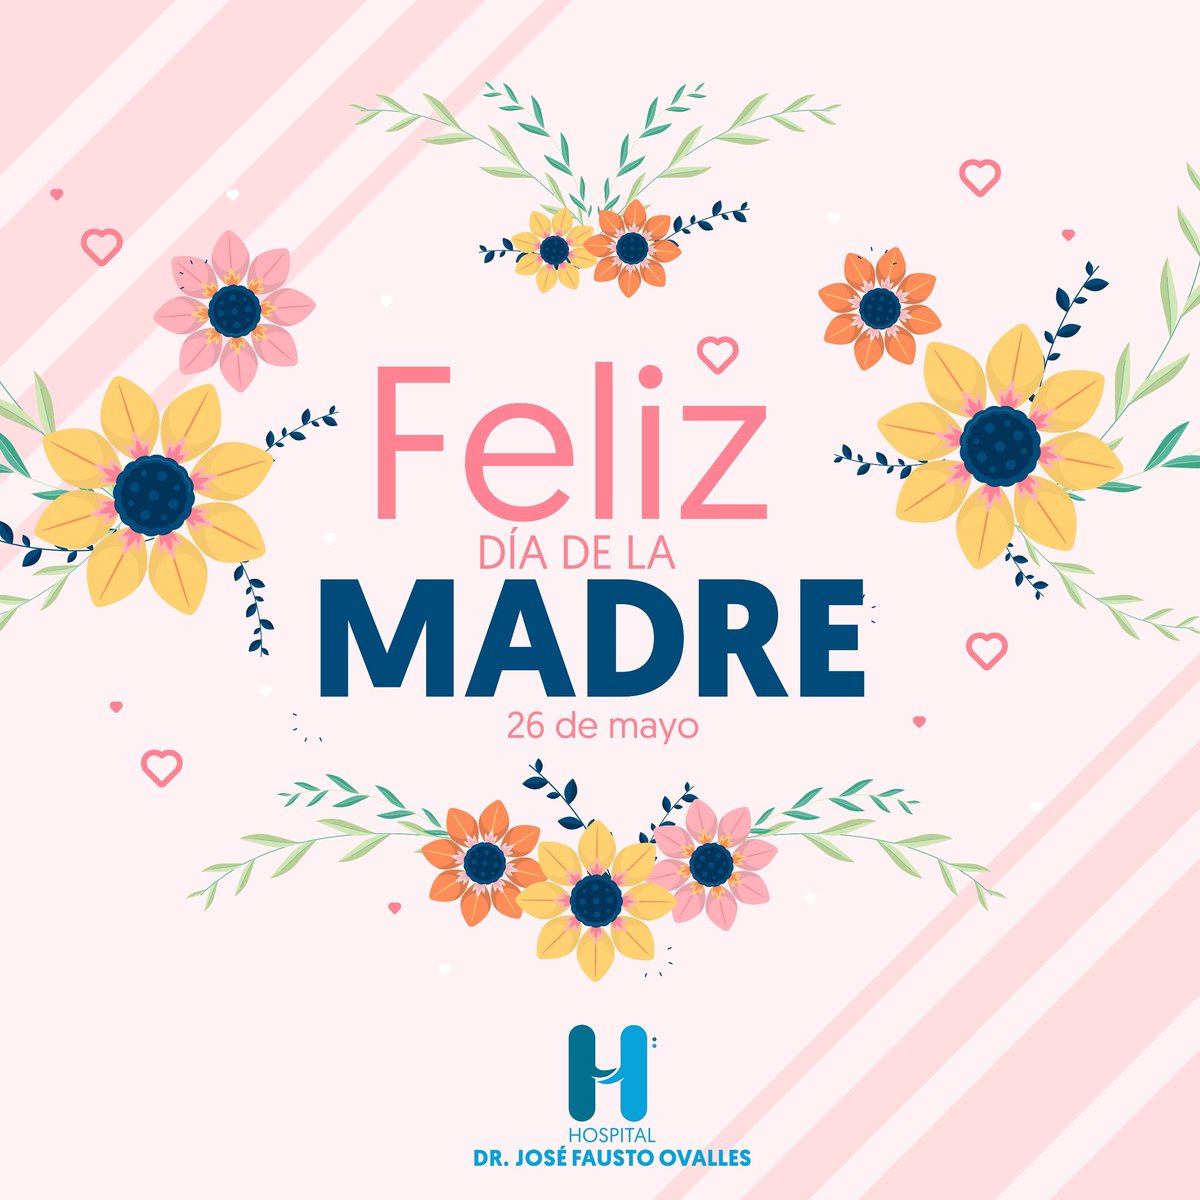 El equipo del Hospital Dr. José Fausto Ovalles les desea un muy Feliz Día de las Madres. 🌸❤️ Gracias a todas las madres por su amor, fortaleza y dedicación. ¡Hoy y siempre, celebramos su invaluable labor! #DíaDeLasMadres #FelizDíaMamá  #AmorIncondicional